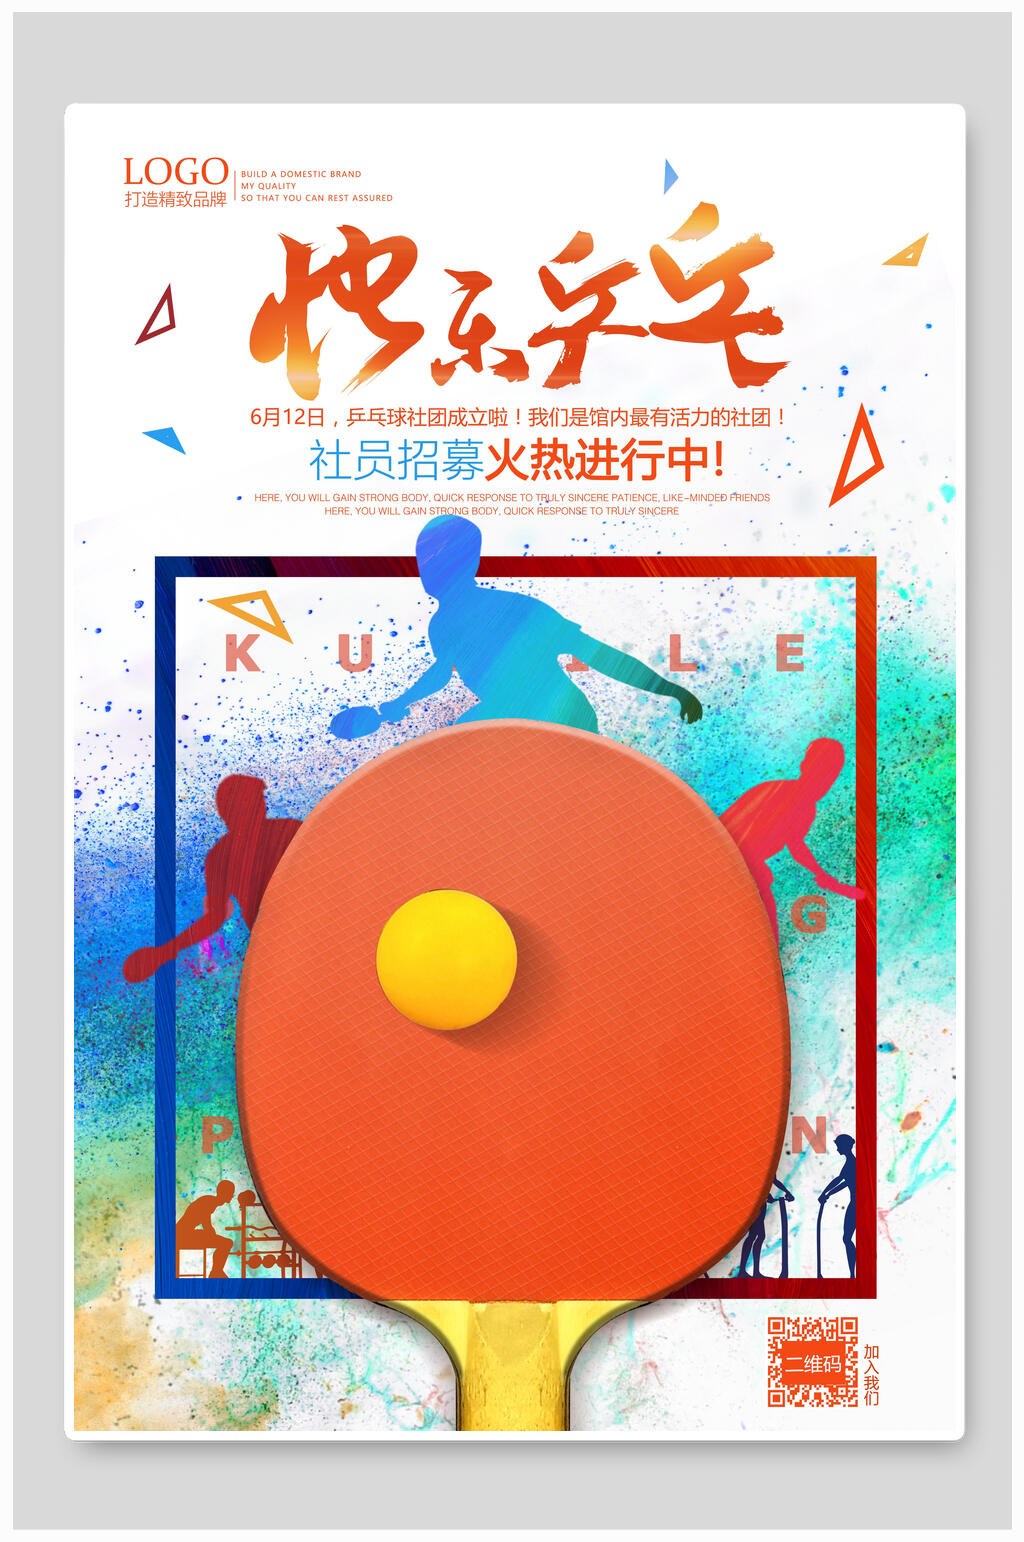 乒乓球社团招新海报立即下载乒乓球高端大气社团招新宣传海报立即下载